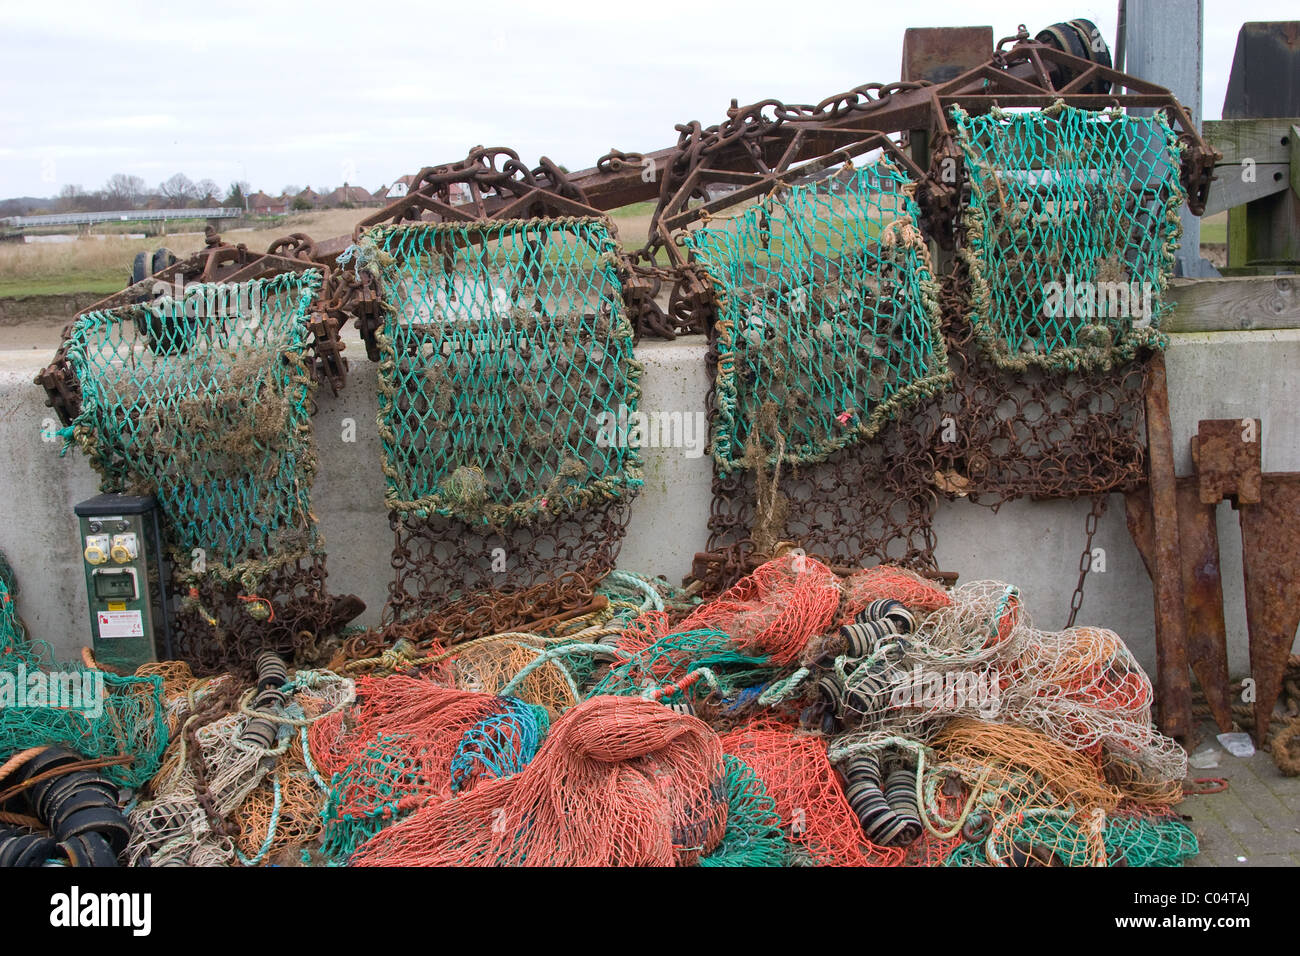 sea fishing trawling nets Stock Photo